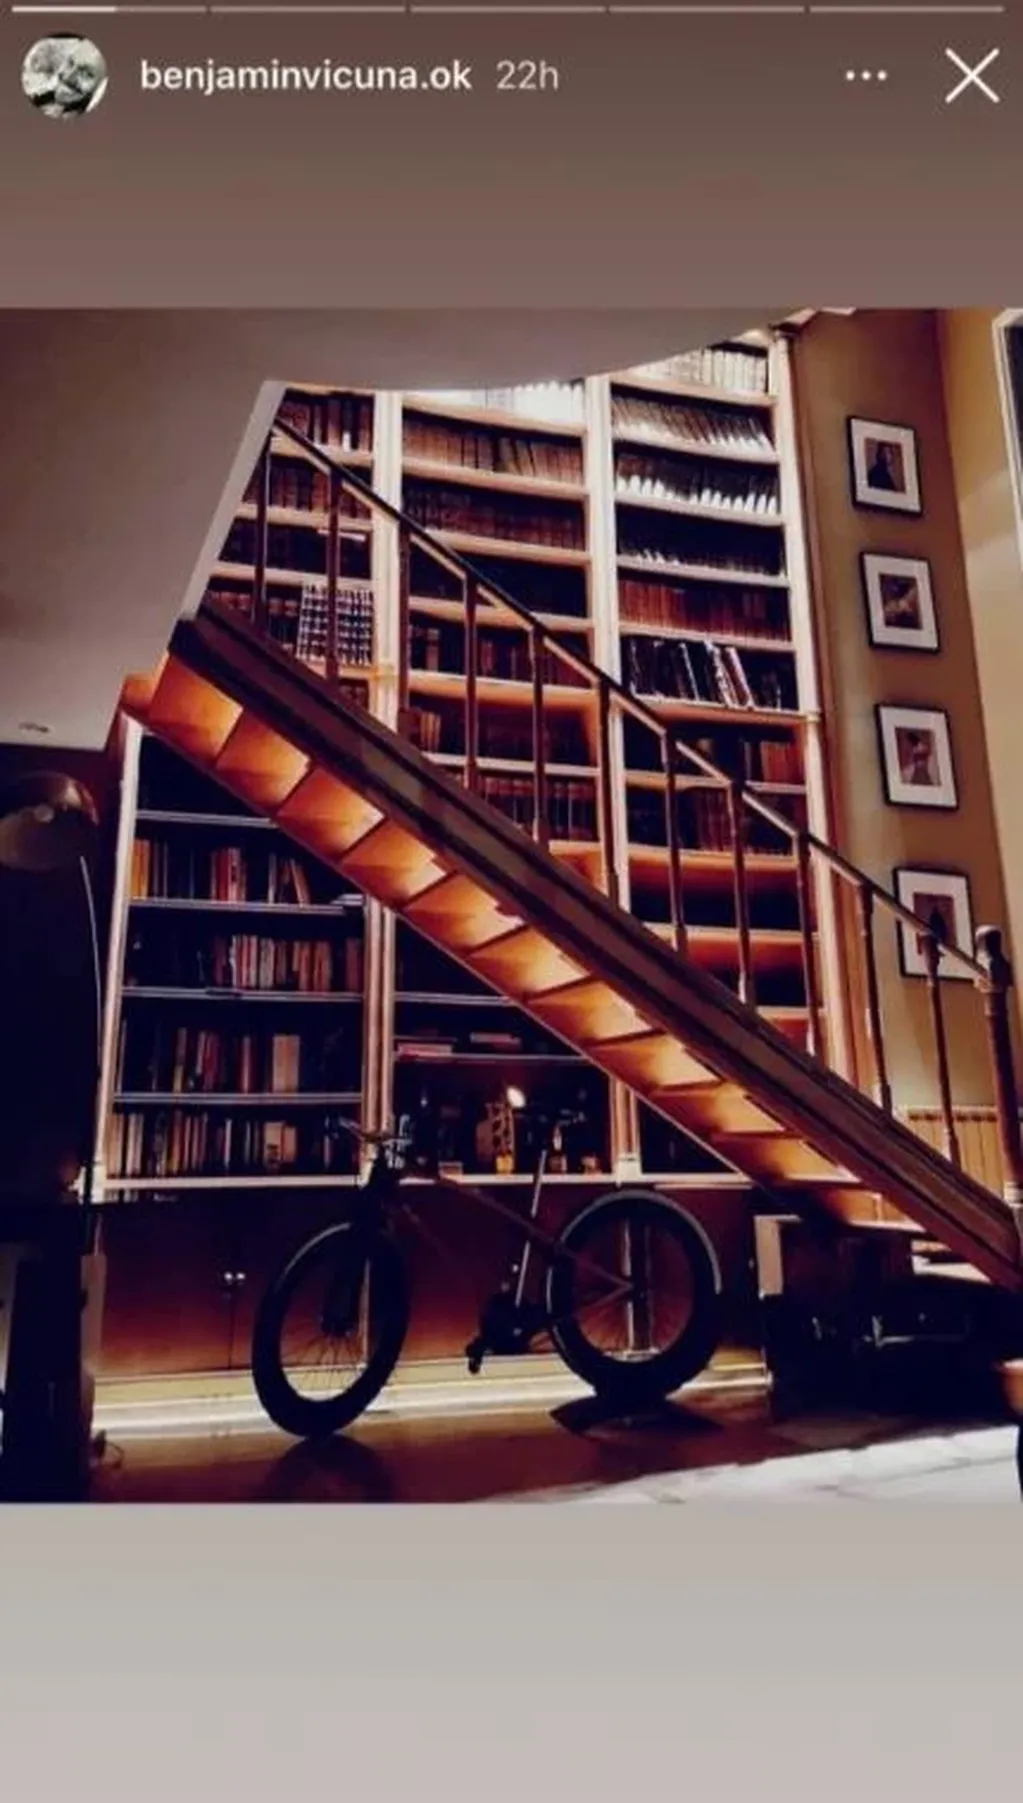 Del piso hasta el techo, una majestuosa biblioteca